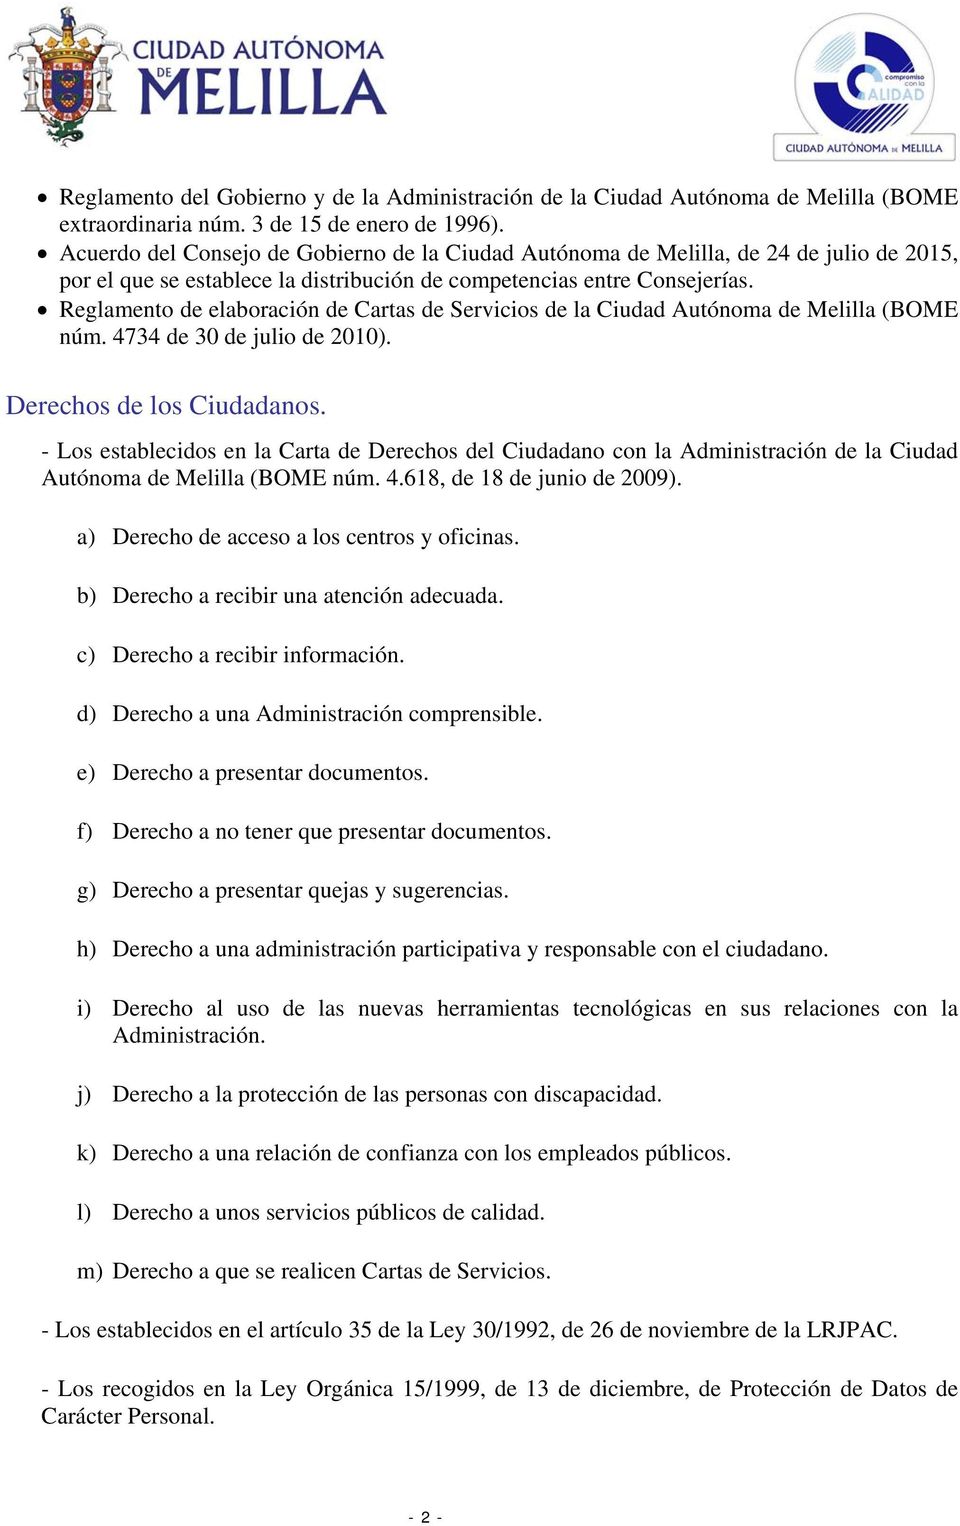 Reglamento de elaboración de Cartas de Servicios de la Ciudad Autónoma de Melilla (BOME núm. 4734 de 30 de julio de 2010). Derechos de los Ciudadanos.